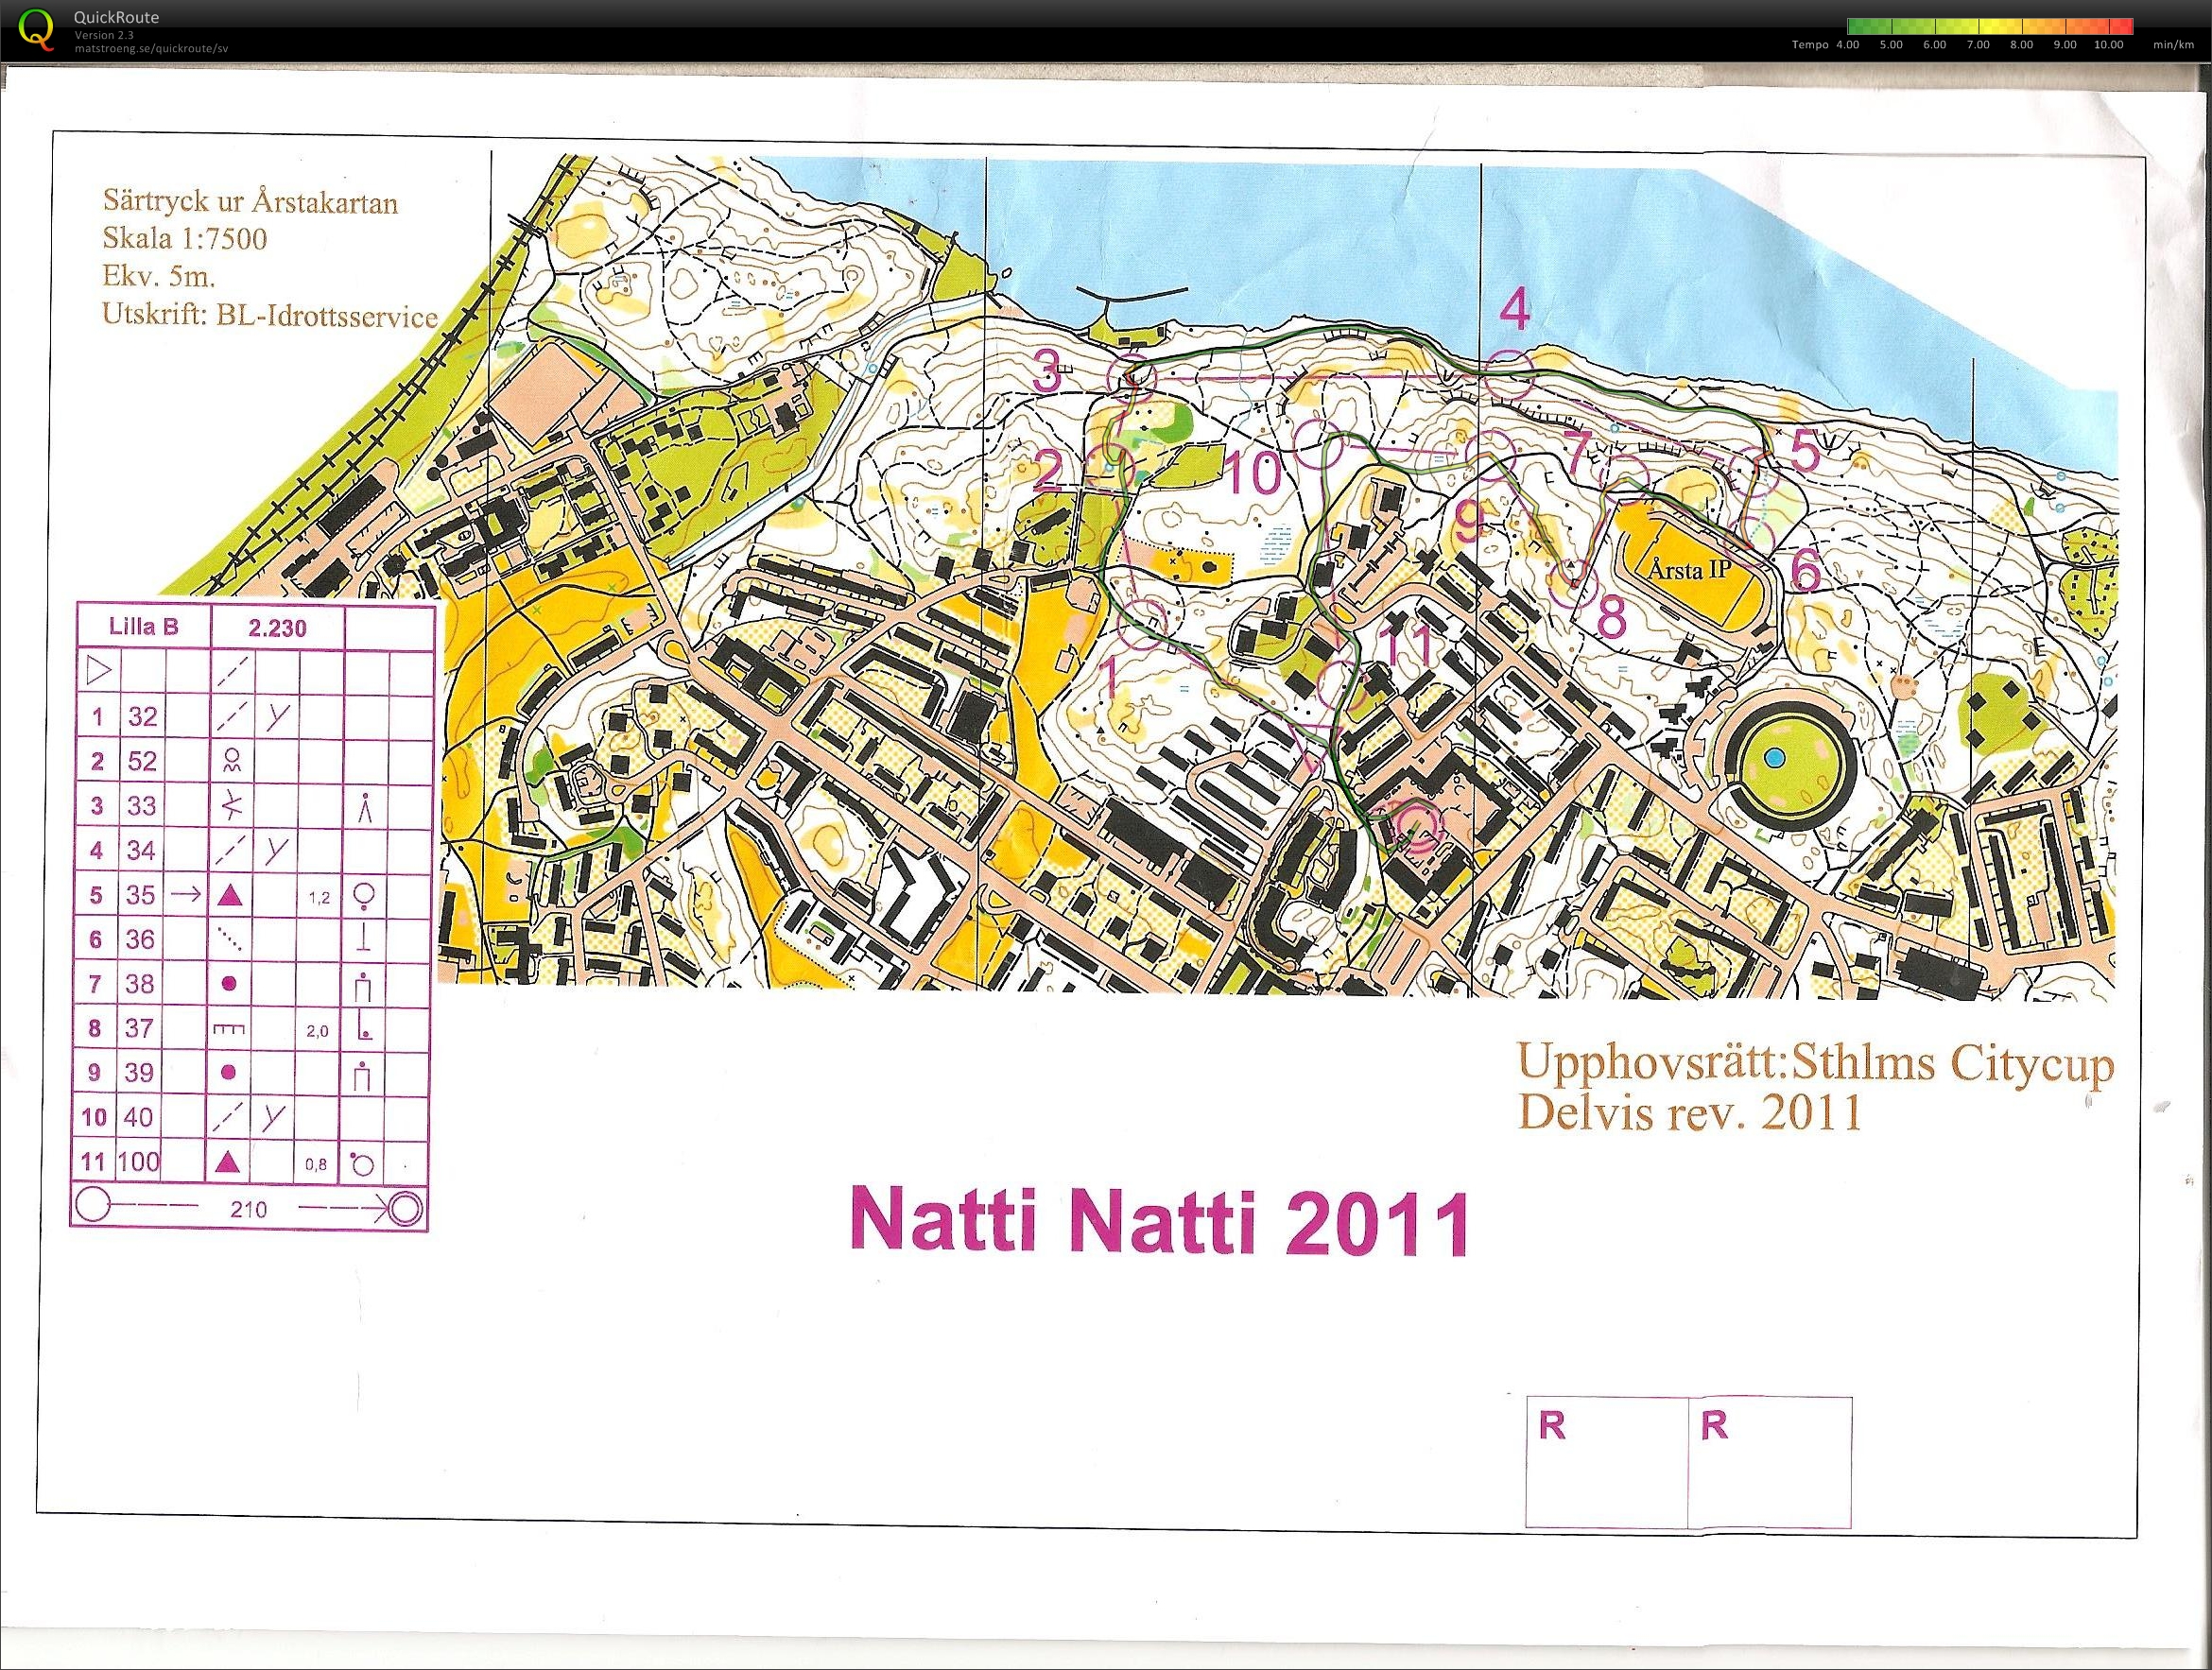 Natti-natti (28/09/2011)